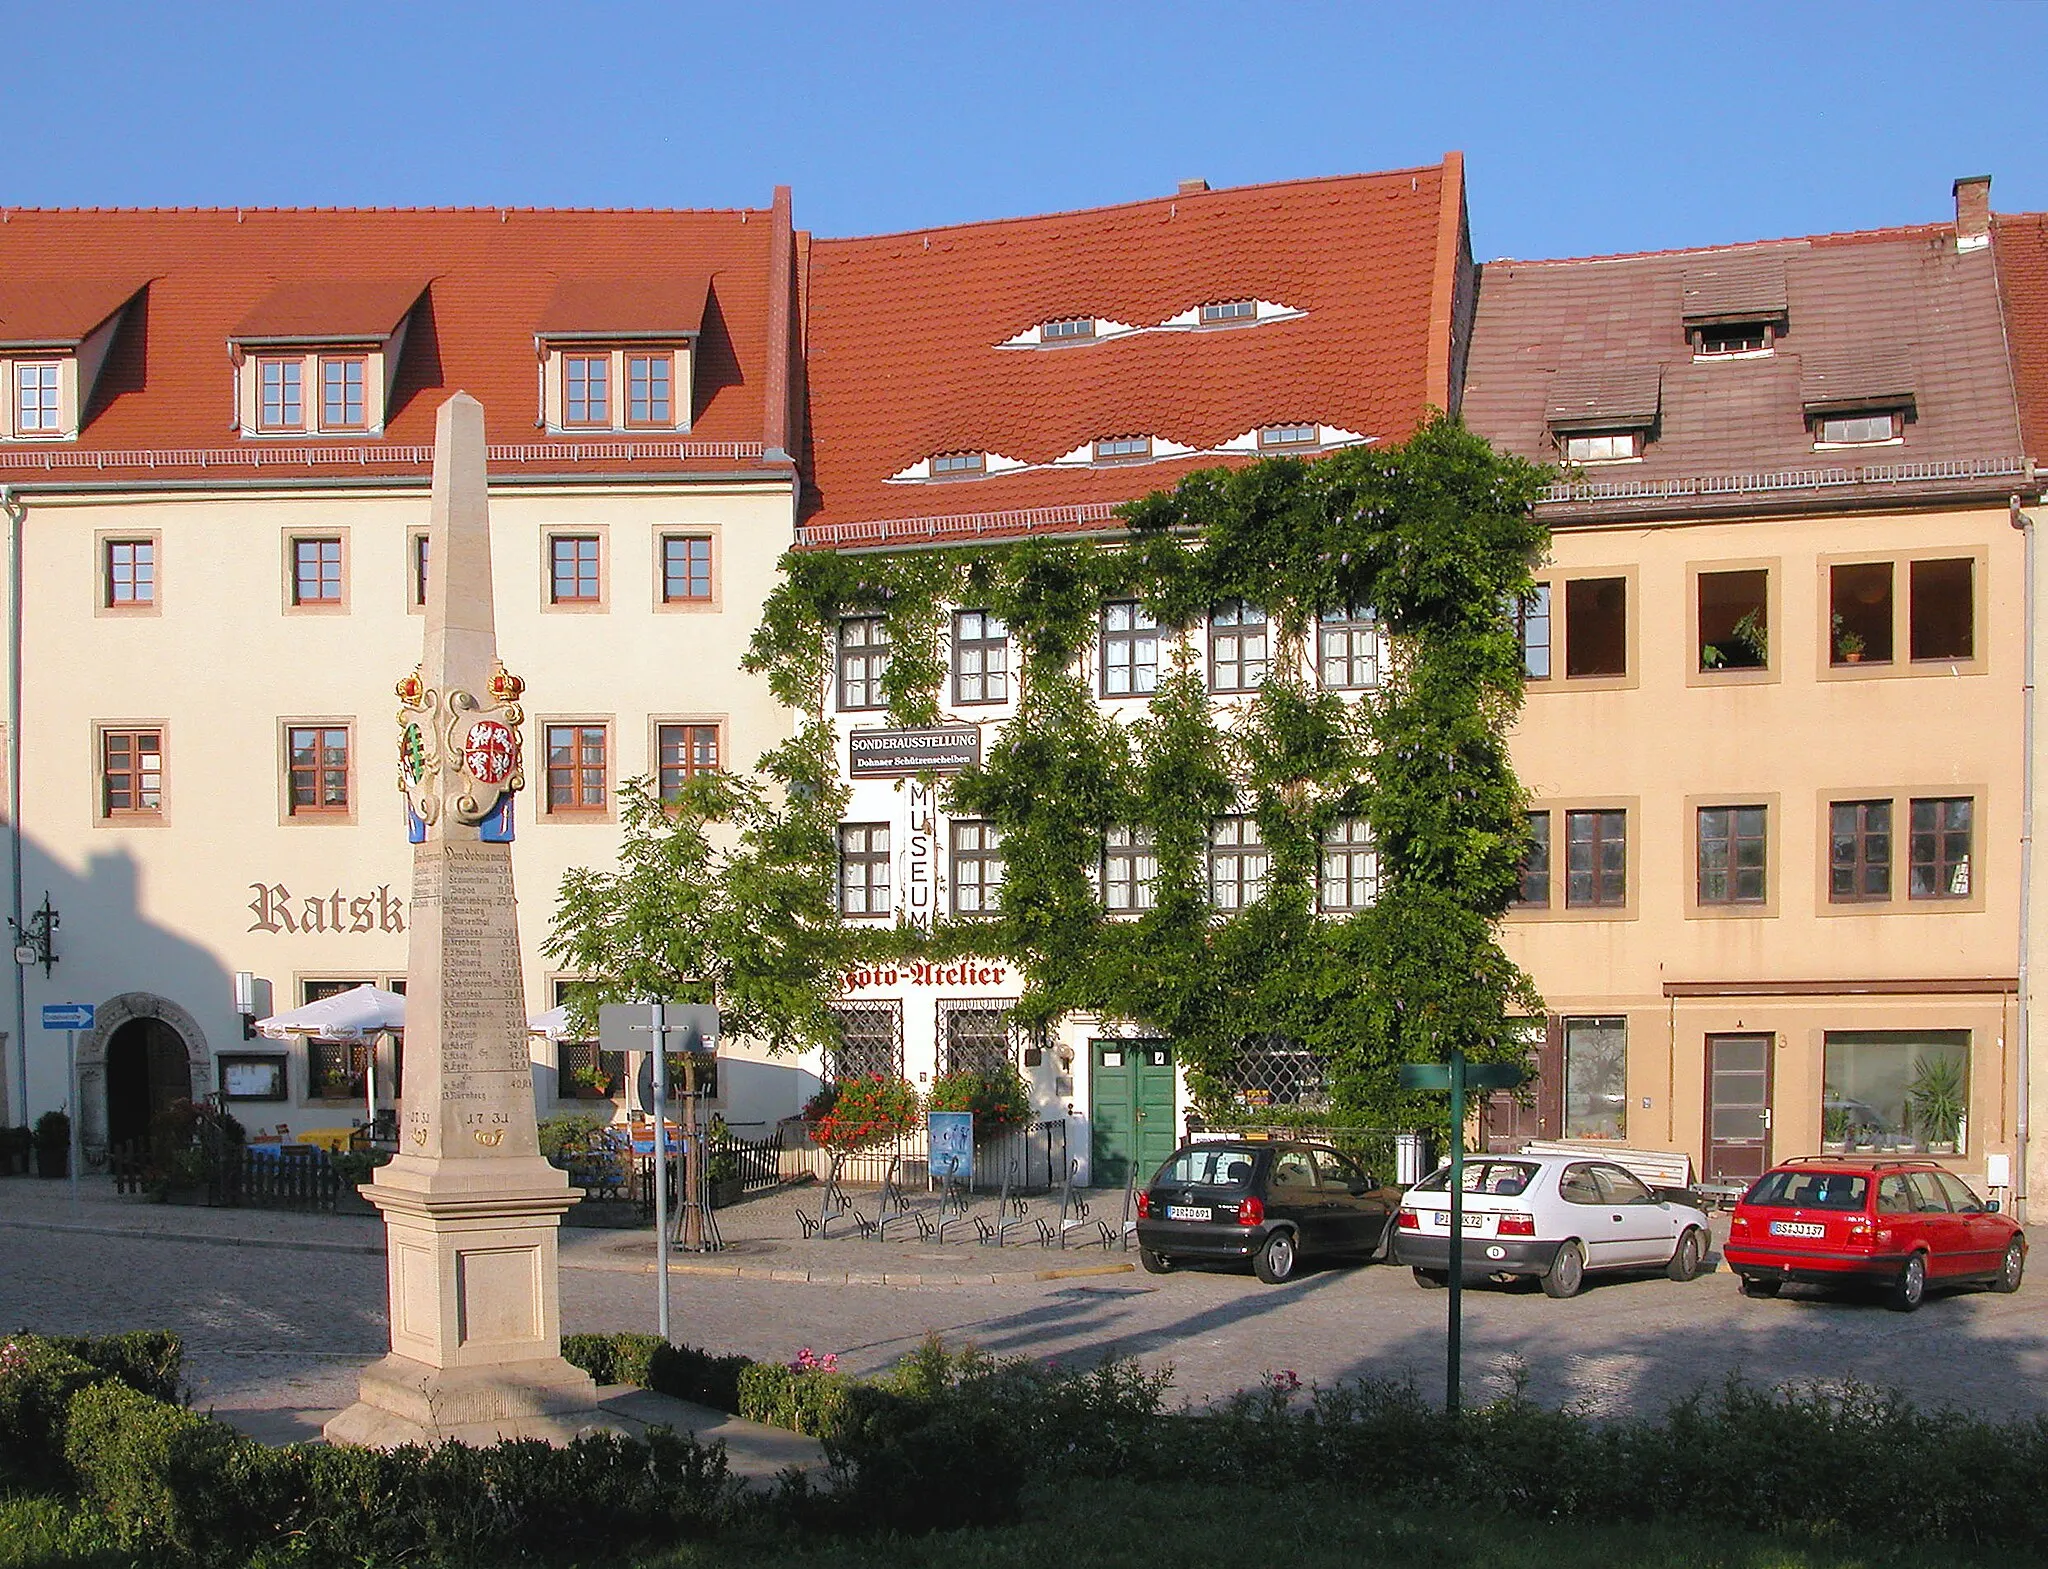 Photo showing: 04.09.2004   01809  Dohna: Marktplatz mit Bürgerhäusern und dem Ratskeller. Davor die Kursächsische Postmeilensäule von 1731 (GMP: 50.955038,13.857716).                                                                                                 [DSCN5007]20040904580DR.JPG(c)Blobelt